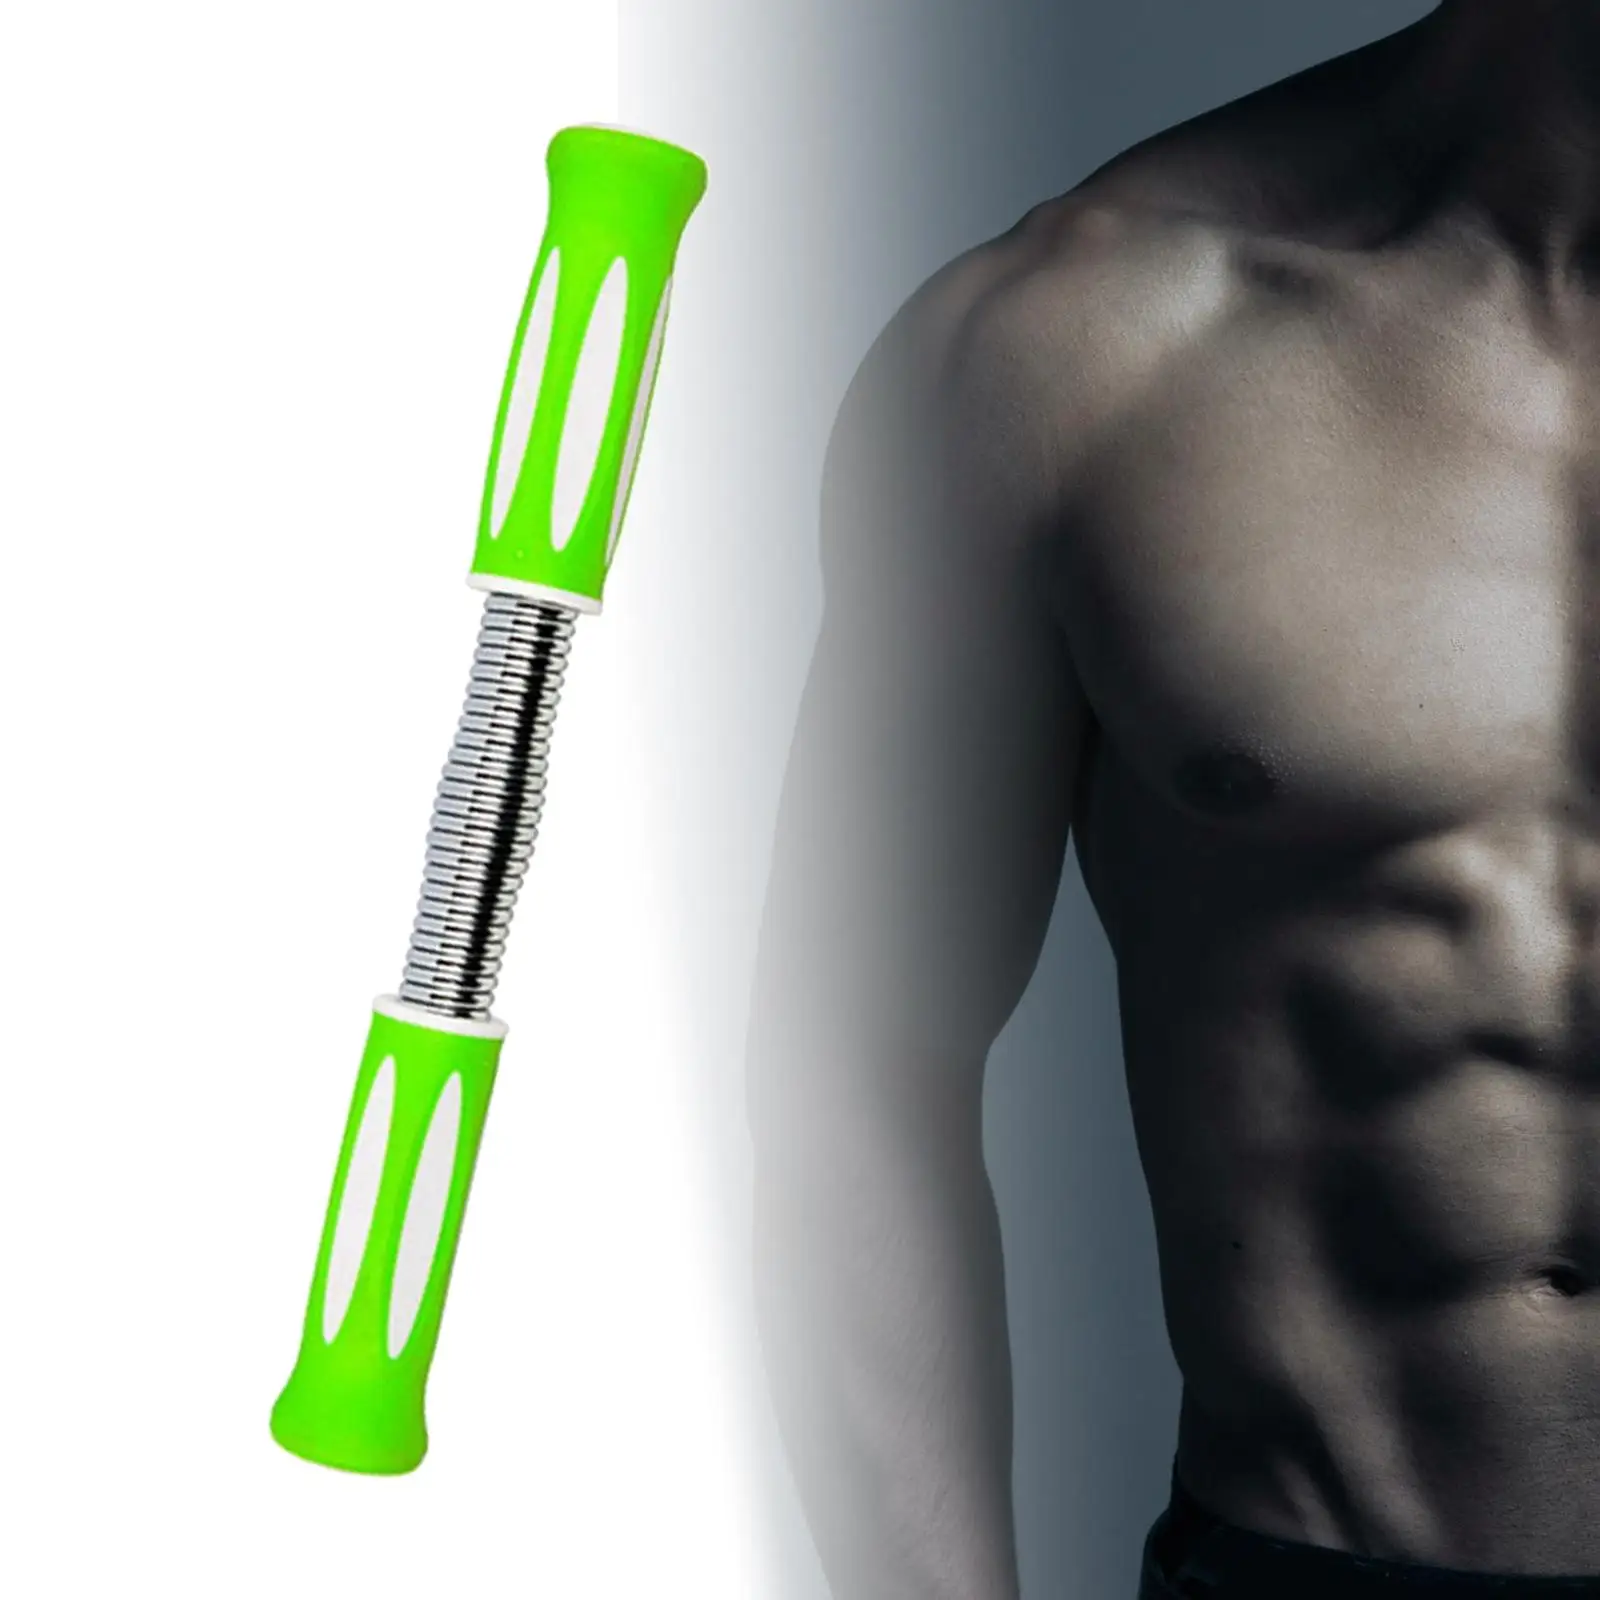 Upper Body Exercise Chest Trainer Arm Strengthener Spring Power Twister Bar